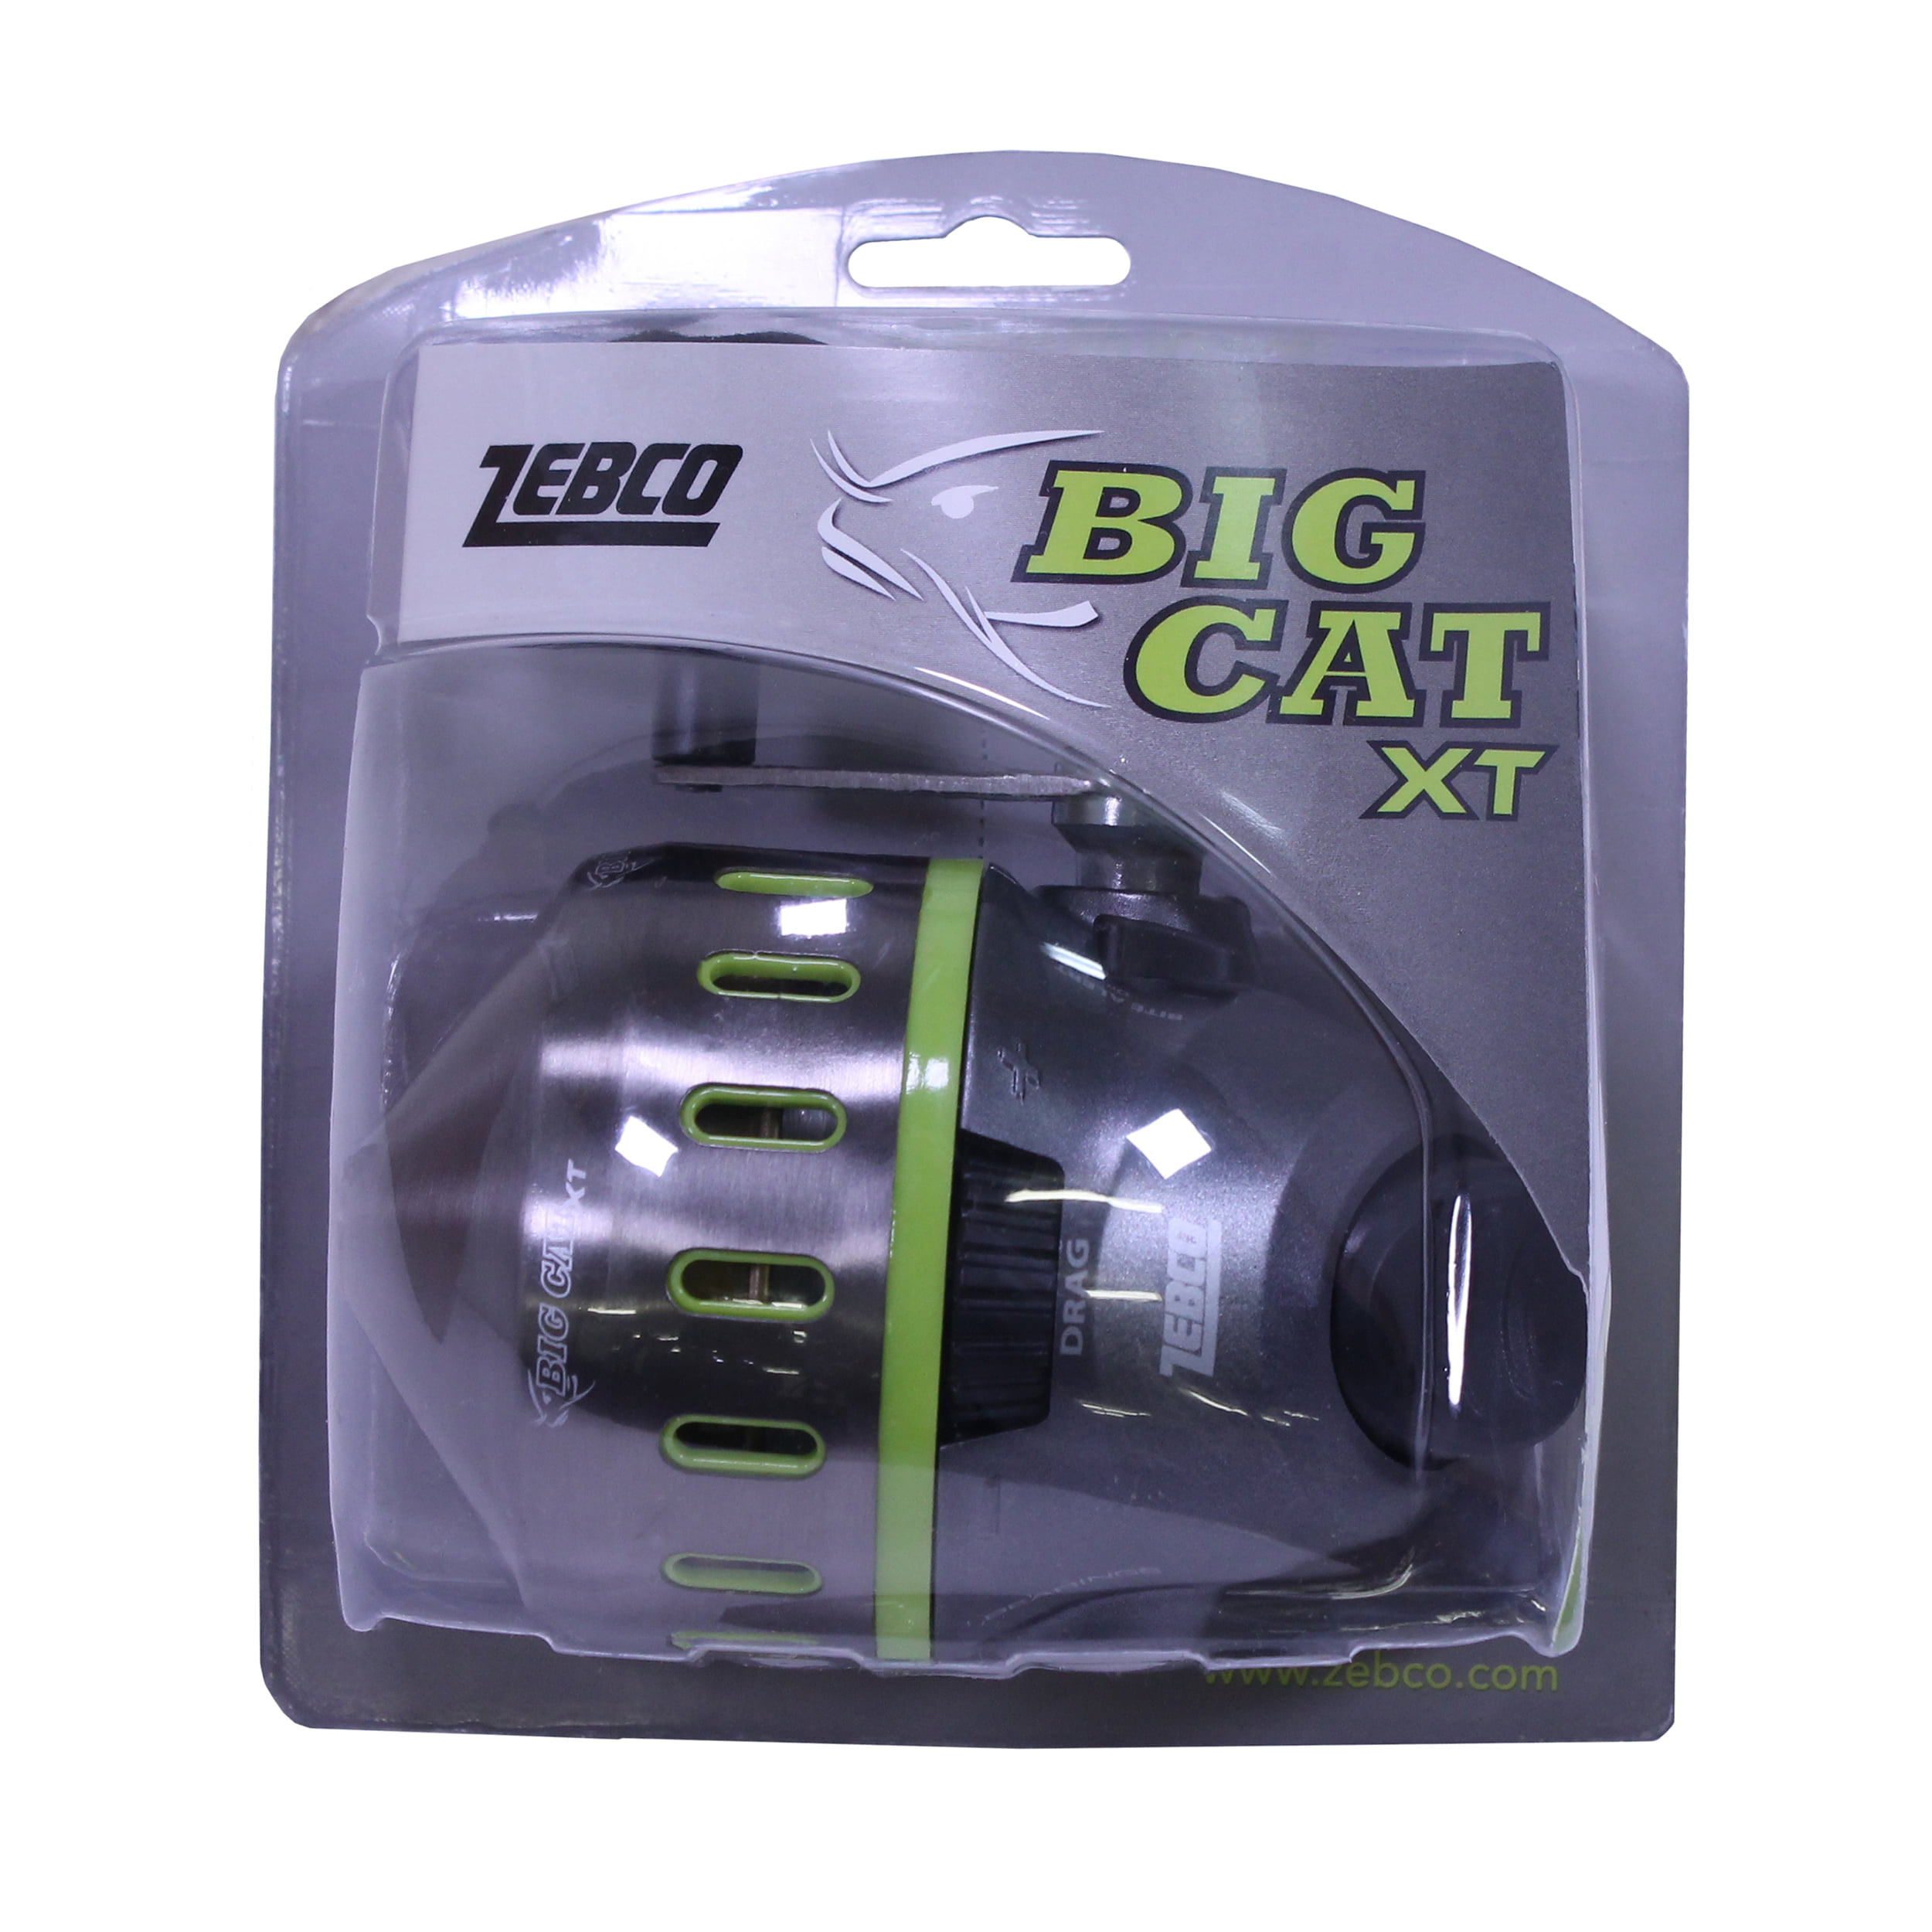 Big Cat XT Spincast Reel